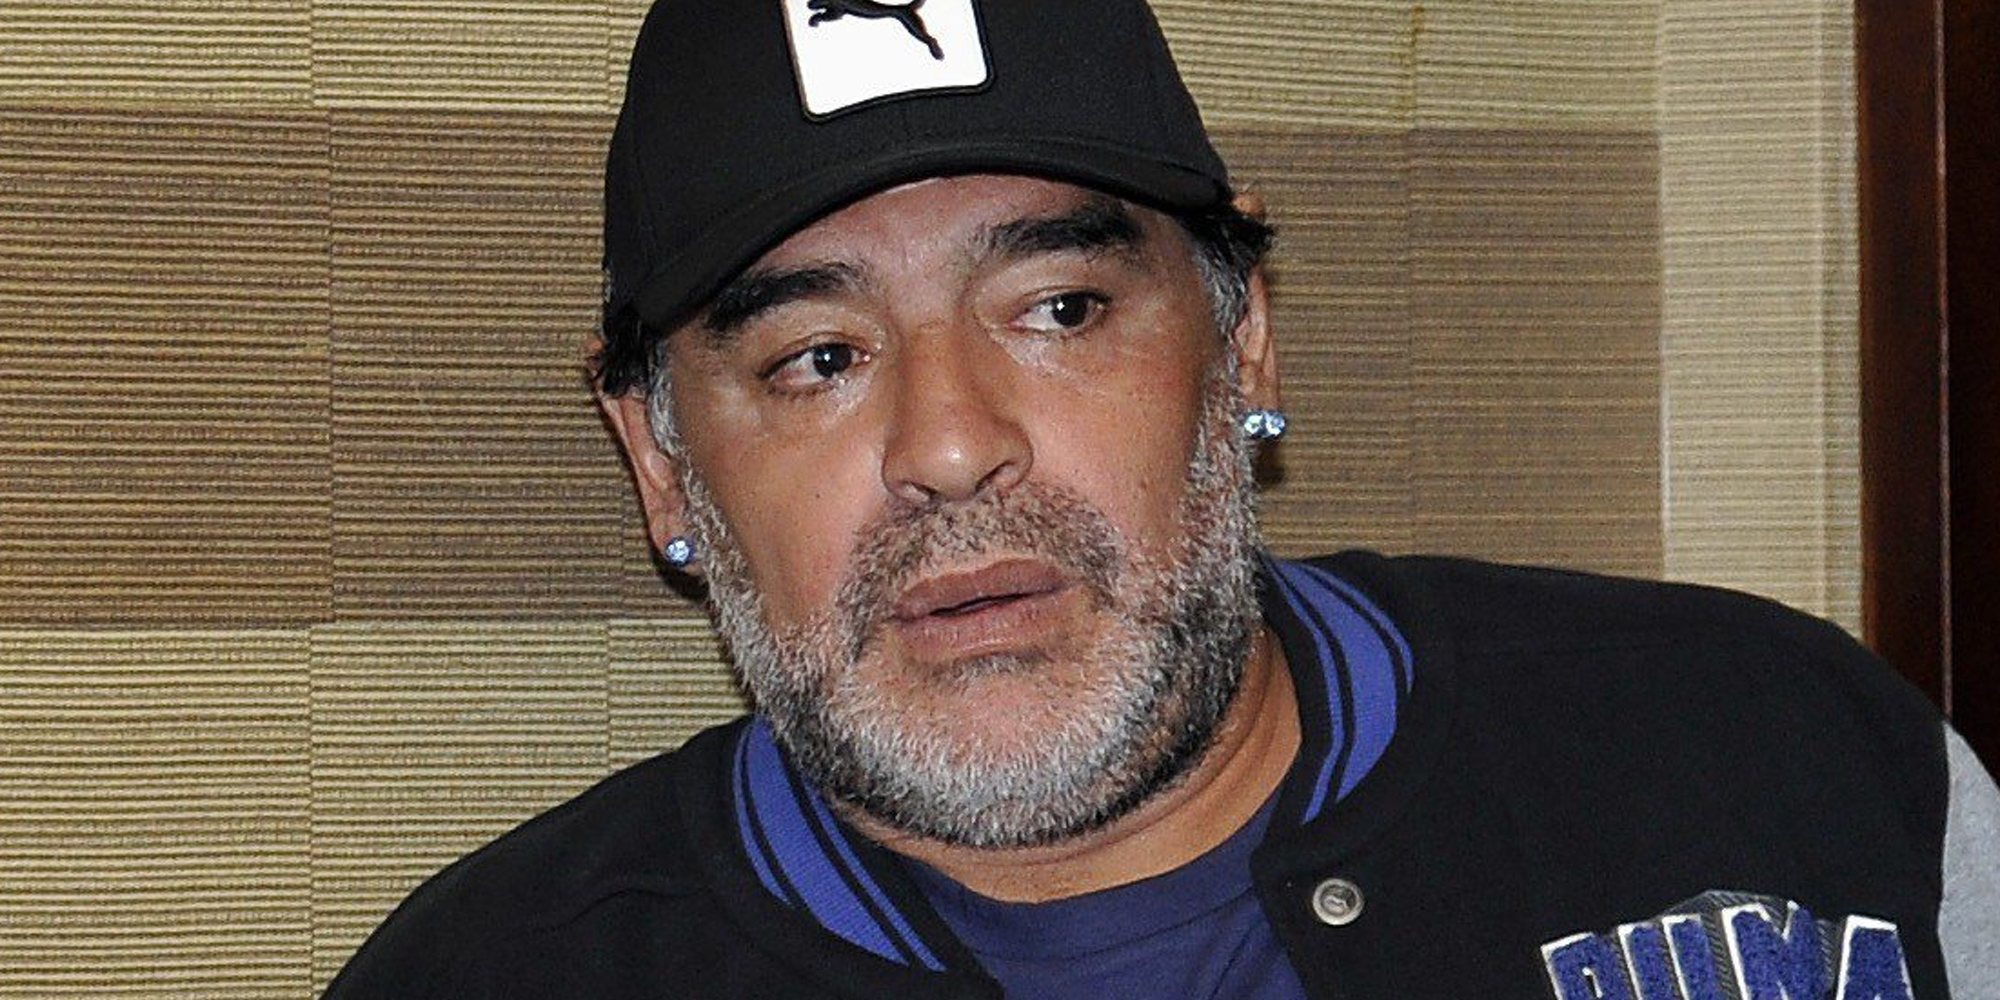 El nuevo drama de Maradona: su novia le ha puesto los cuernos y lo ha echado de casa